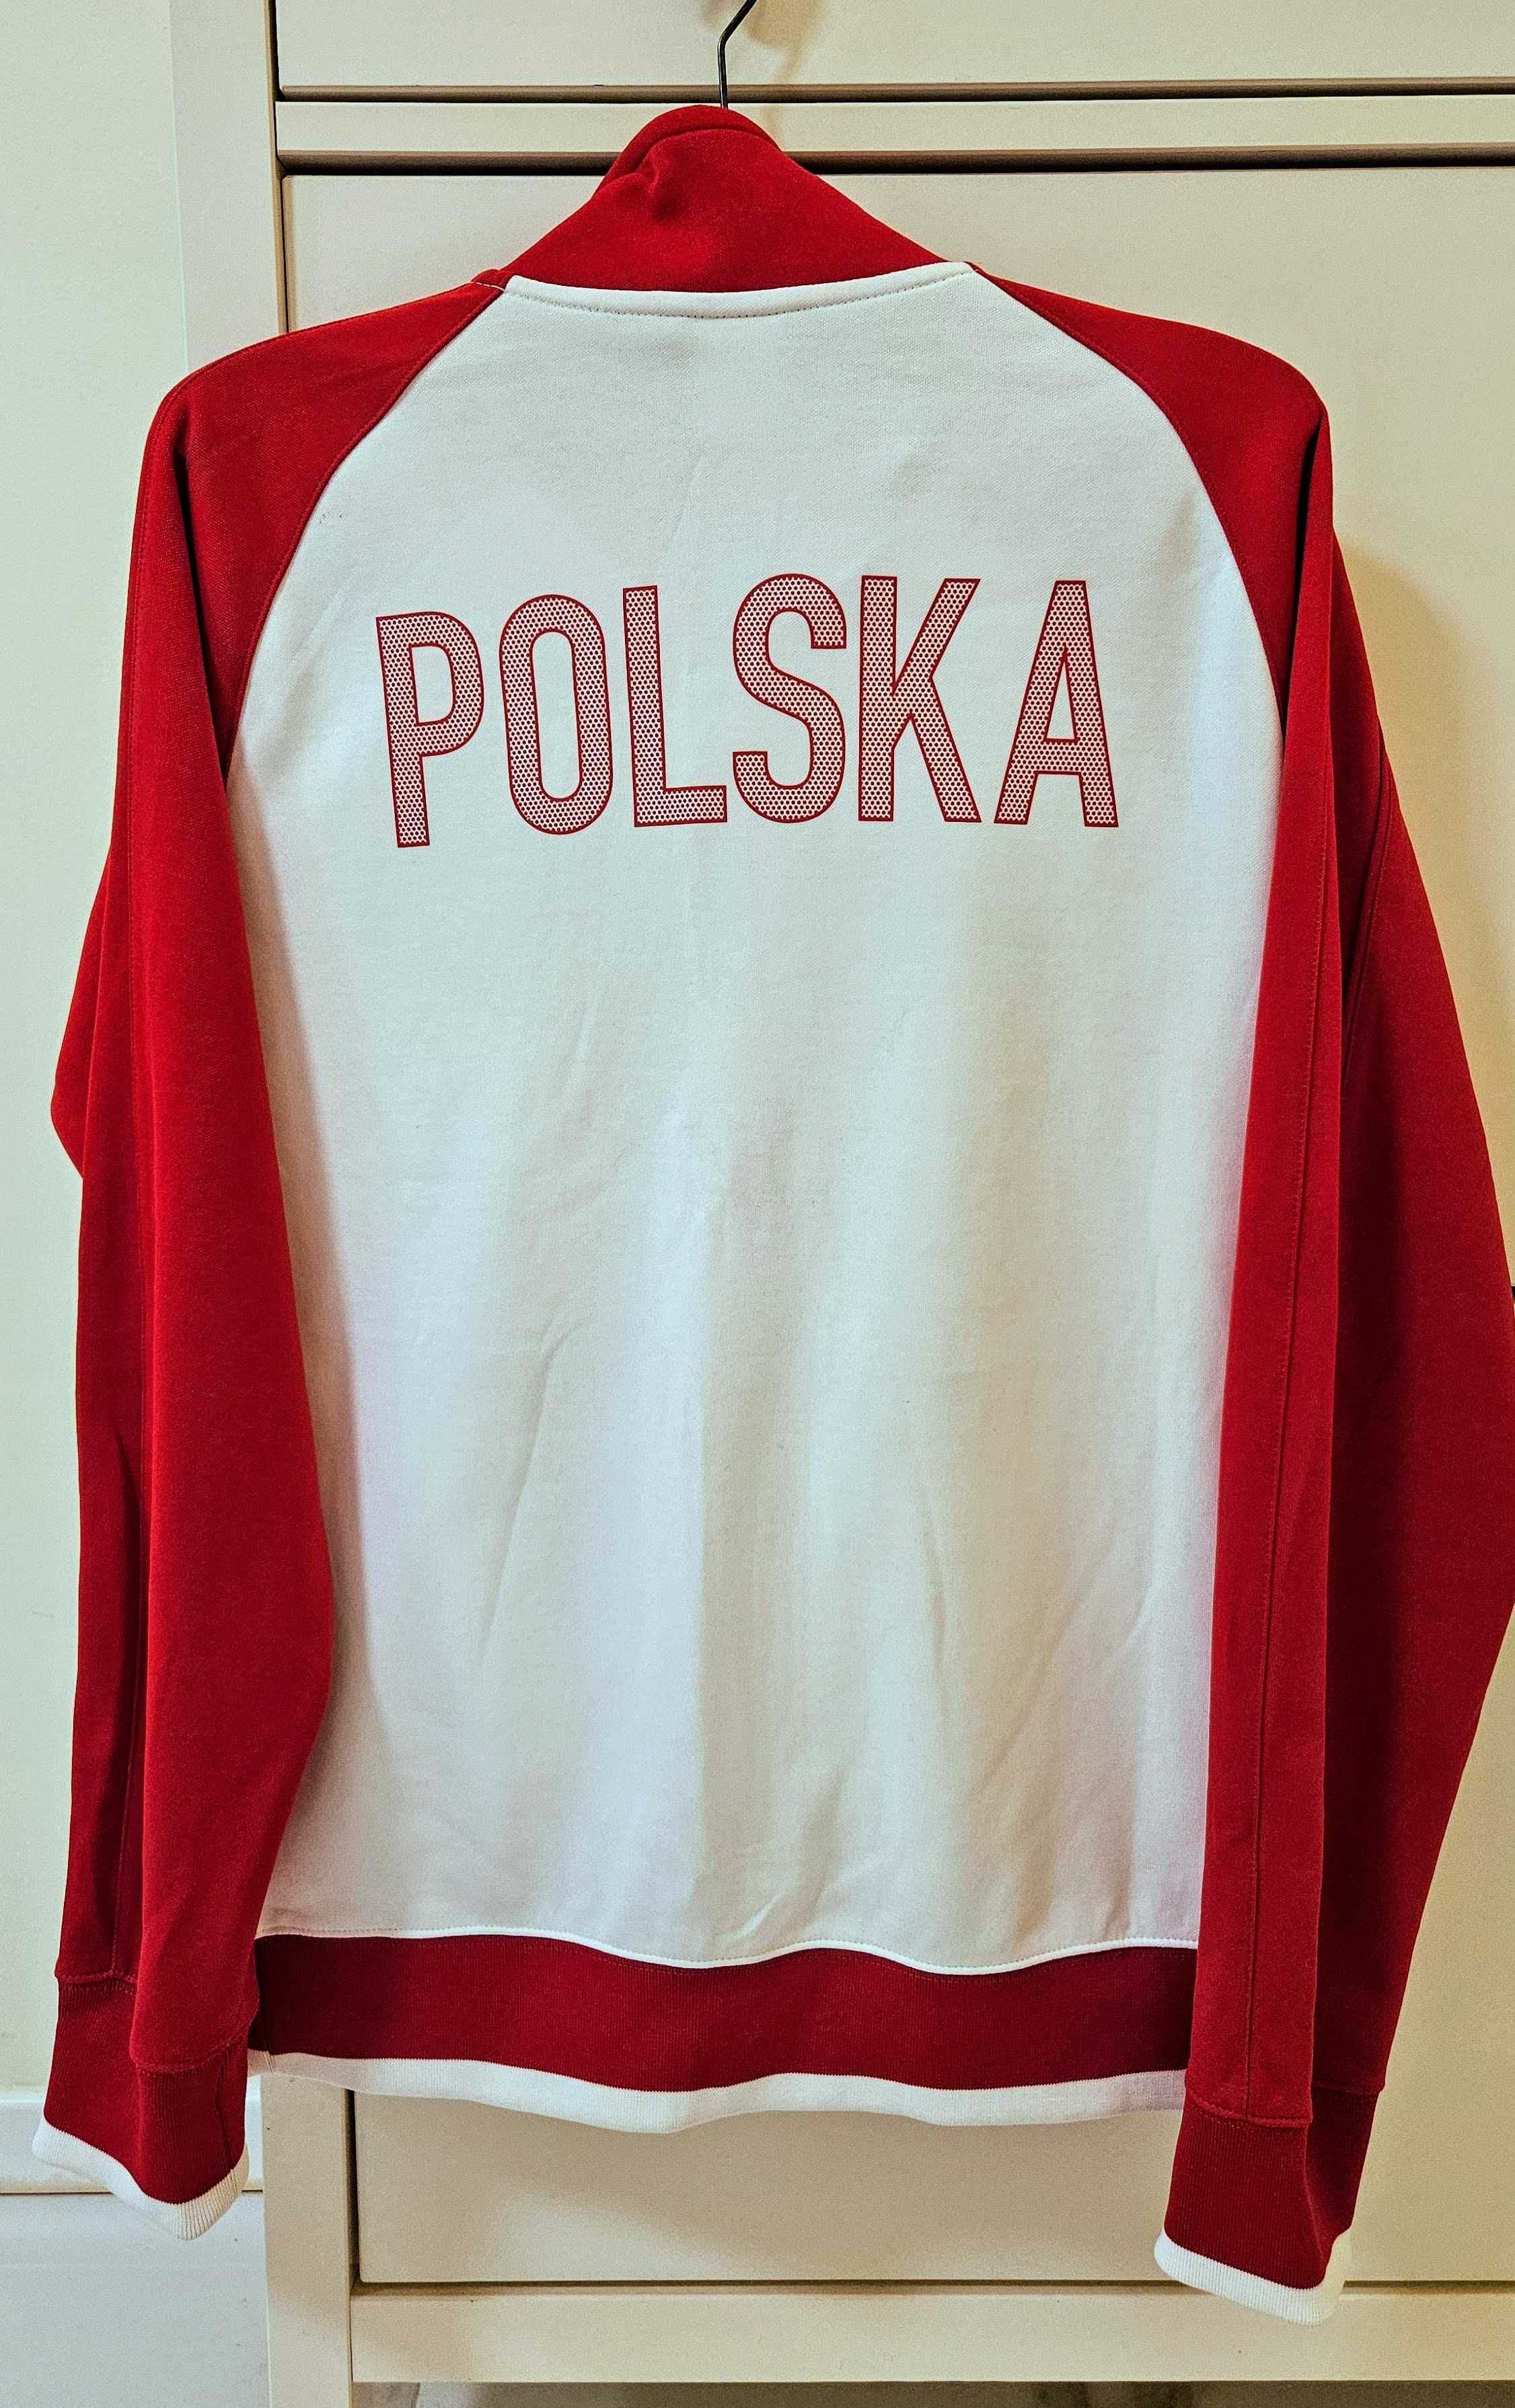 Oryginalna bluza Nike reprezentacji Polski z EURO 2012 - NIEUŻYWANA